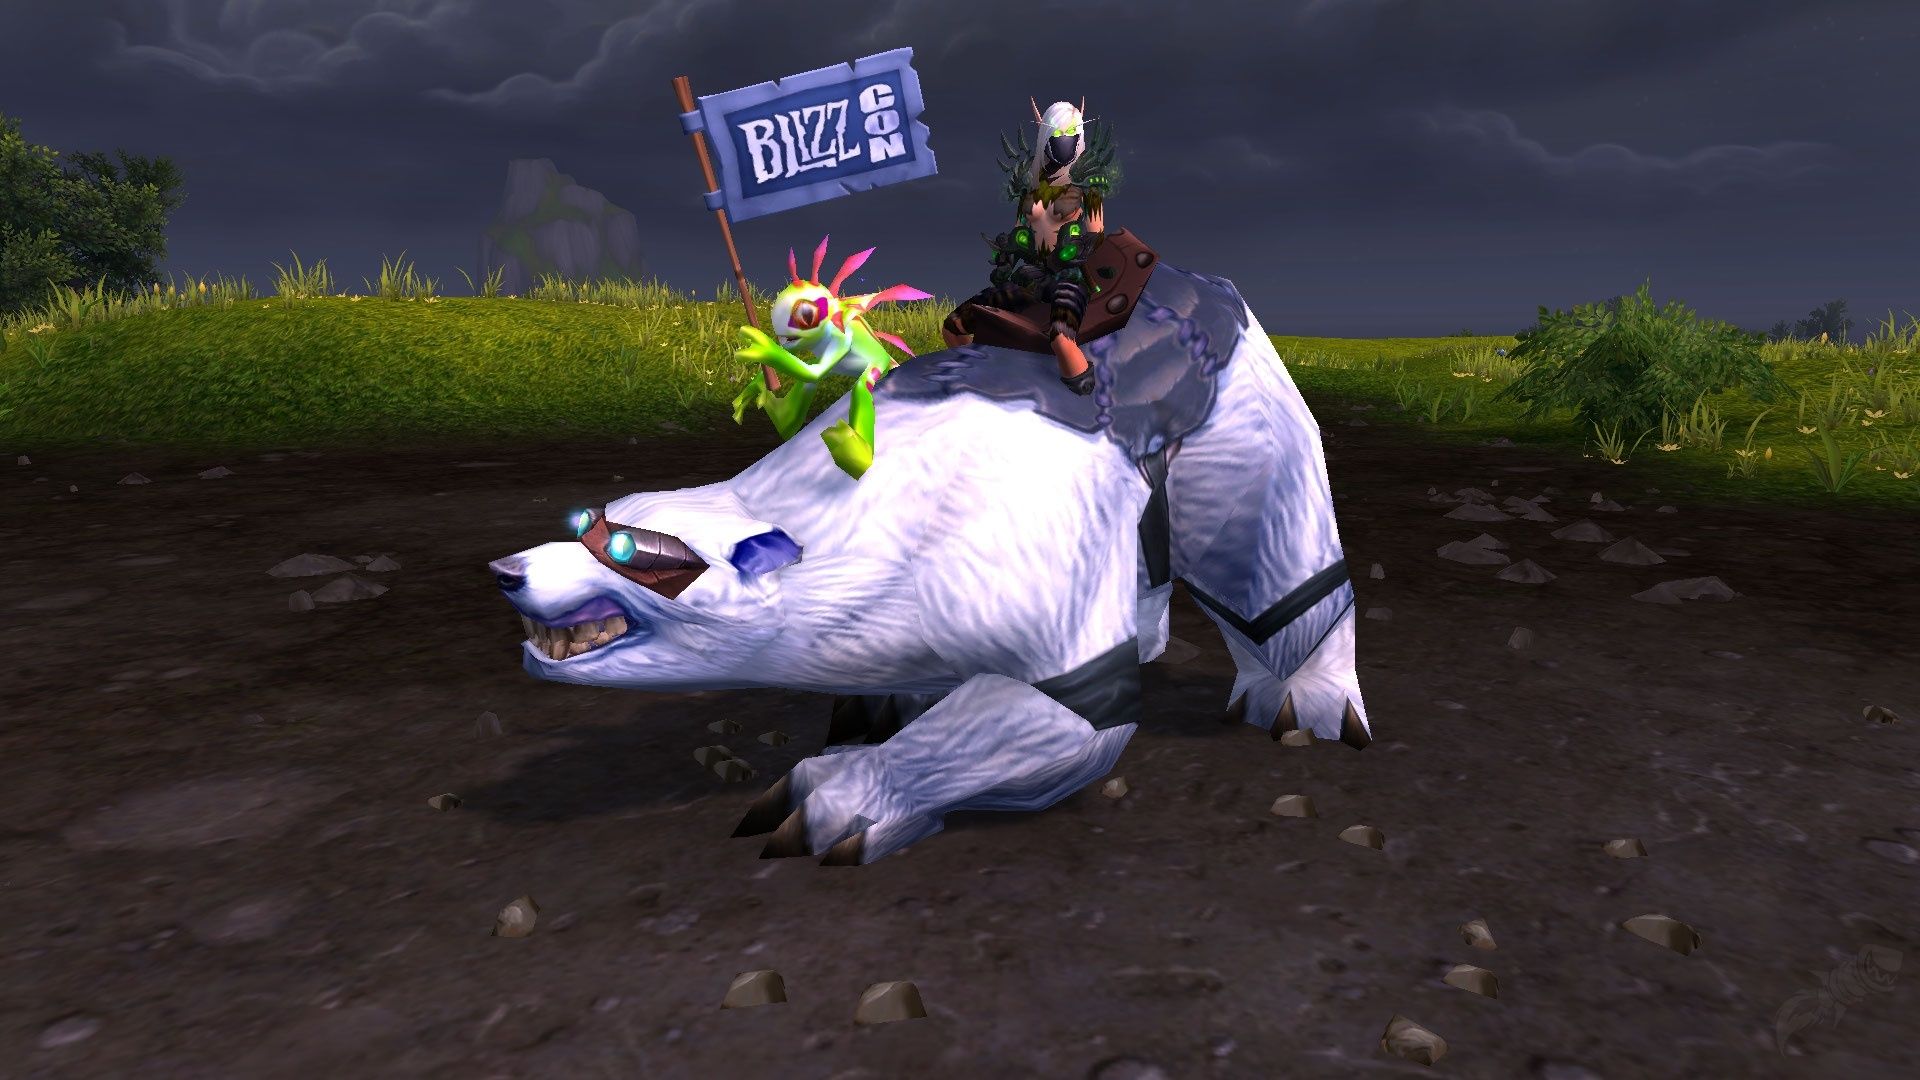 Большой медведь Blizzard из World of Warcraft. Источник: Wowhead